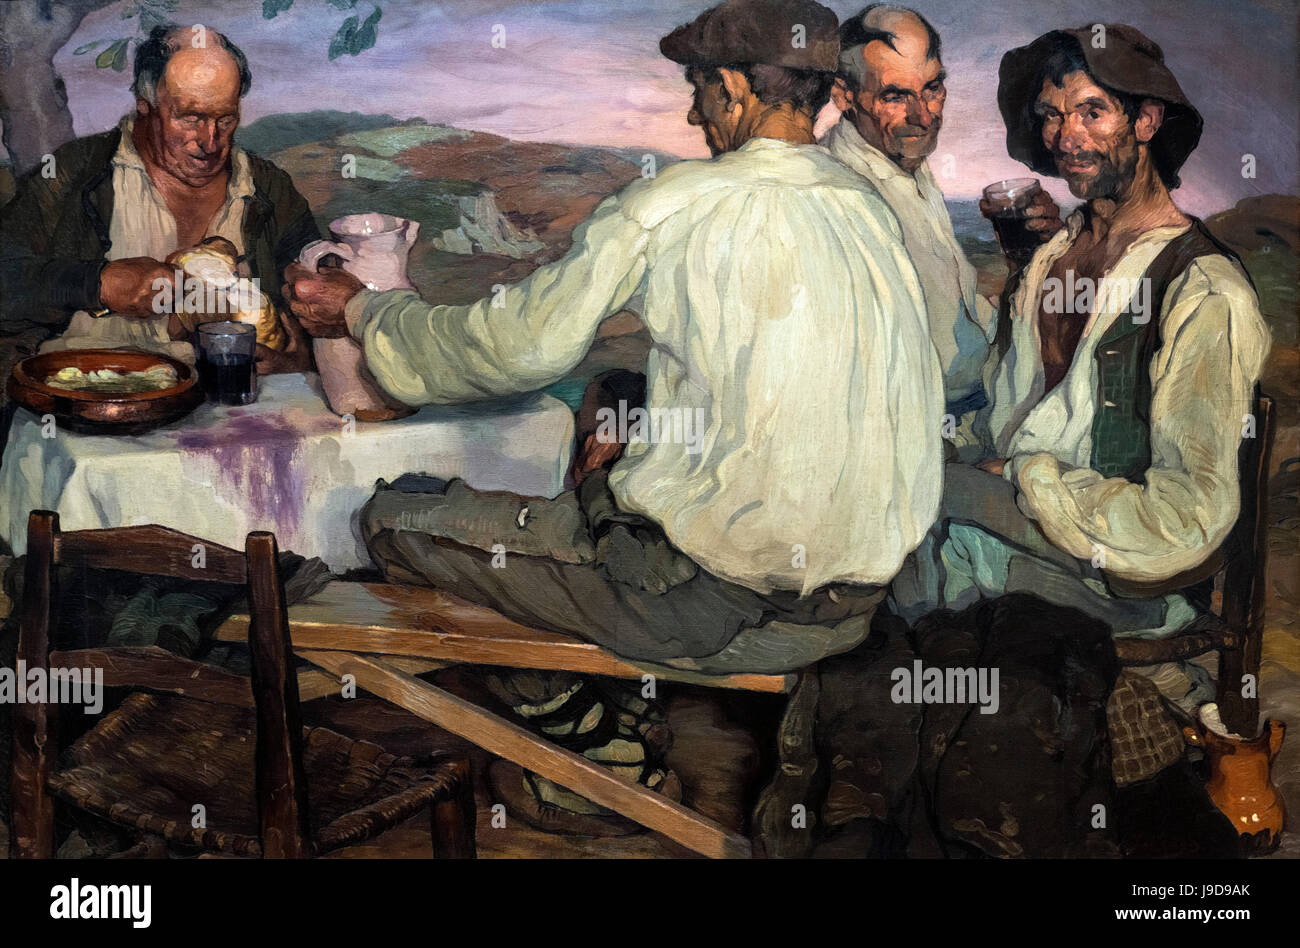 Les agriculteurs espagnols par Ignacio Zuloaga (1870-1945), huile sur toile, 1905 Banque D'Images